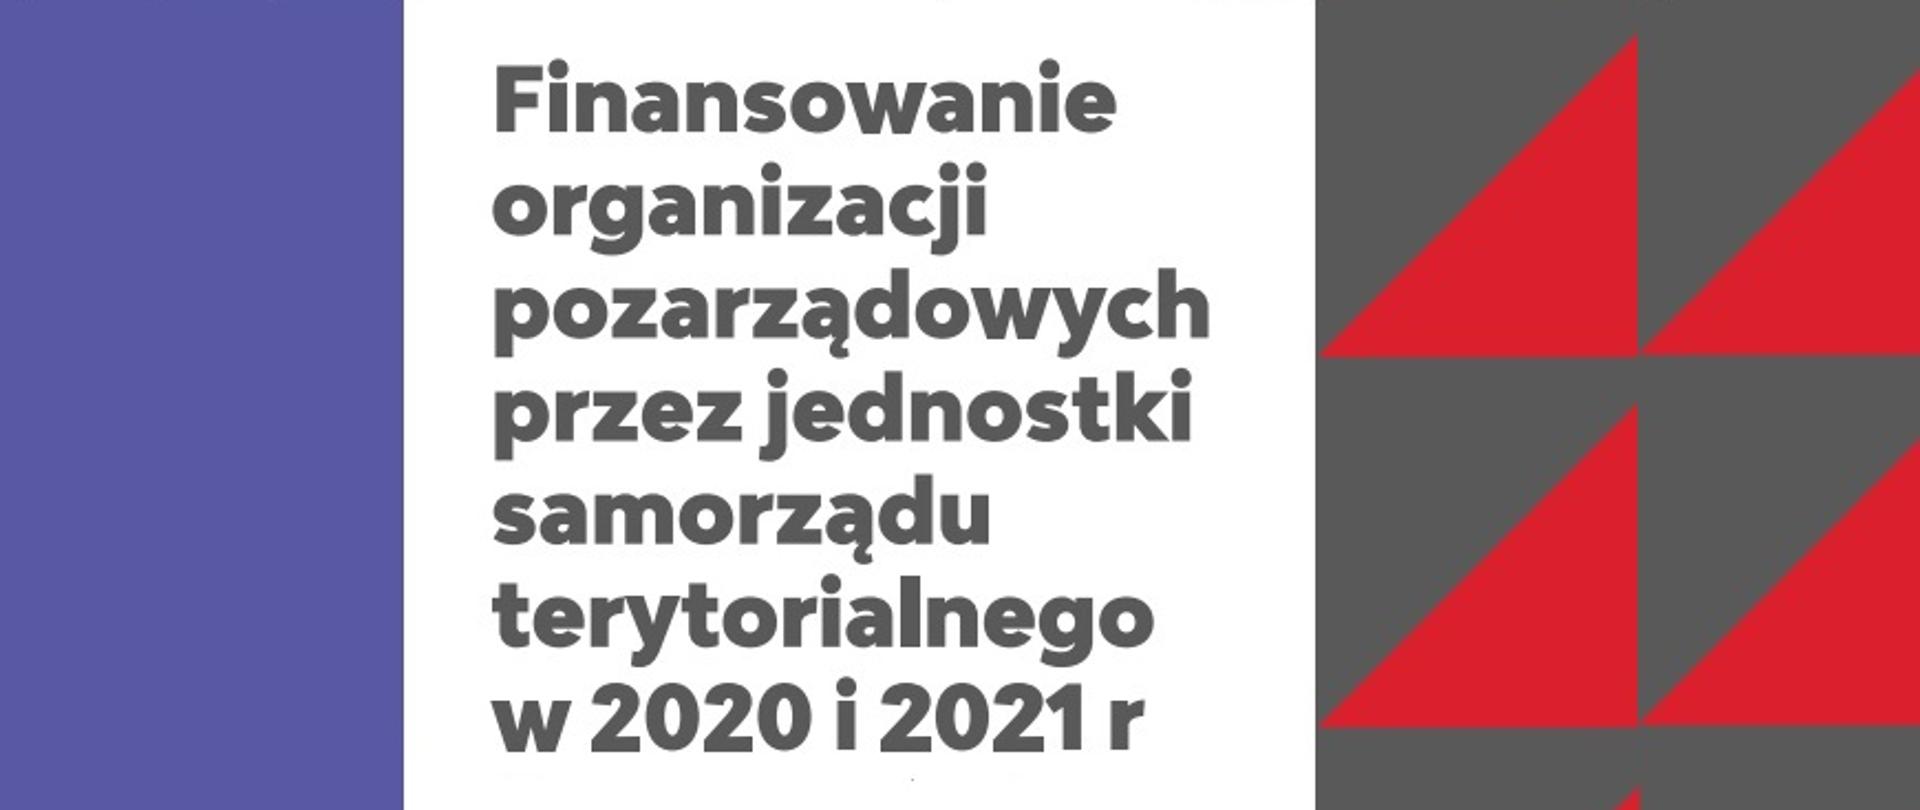 
Plakat informacyjny Badanie „Finansowanie organizacji pozarządowych przez jednostki samorządu terytorialnego w 2020 i 2021 r.”